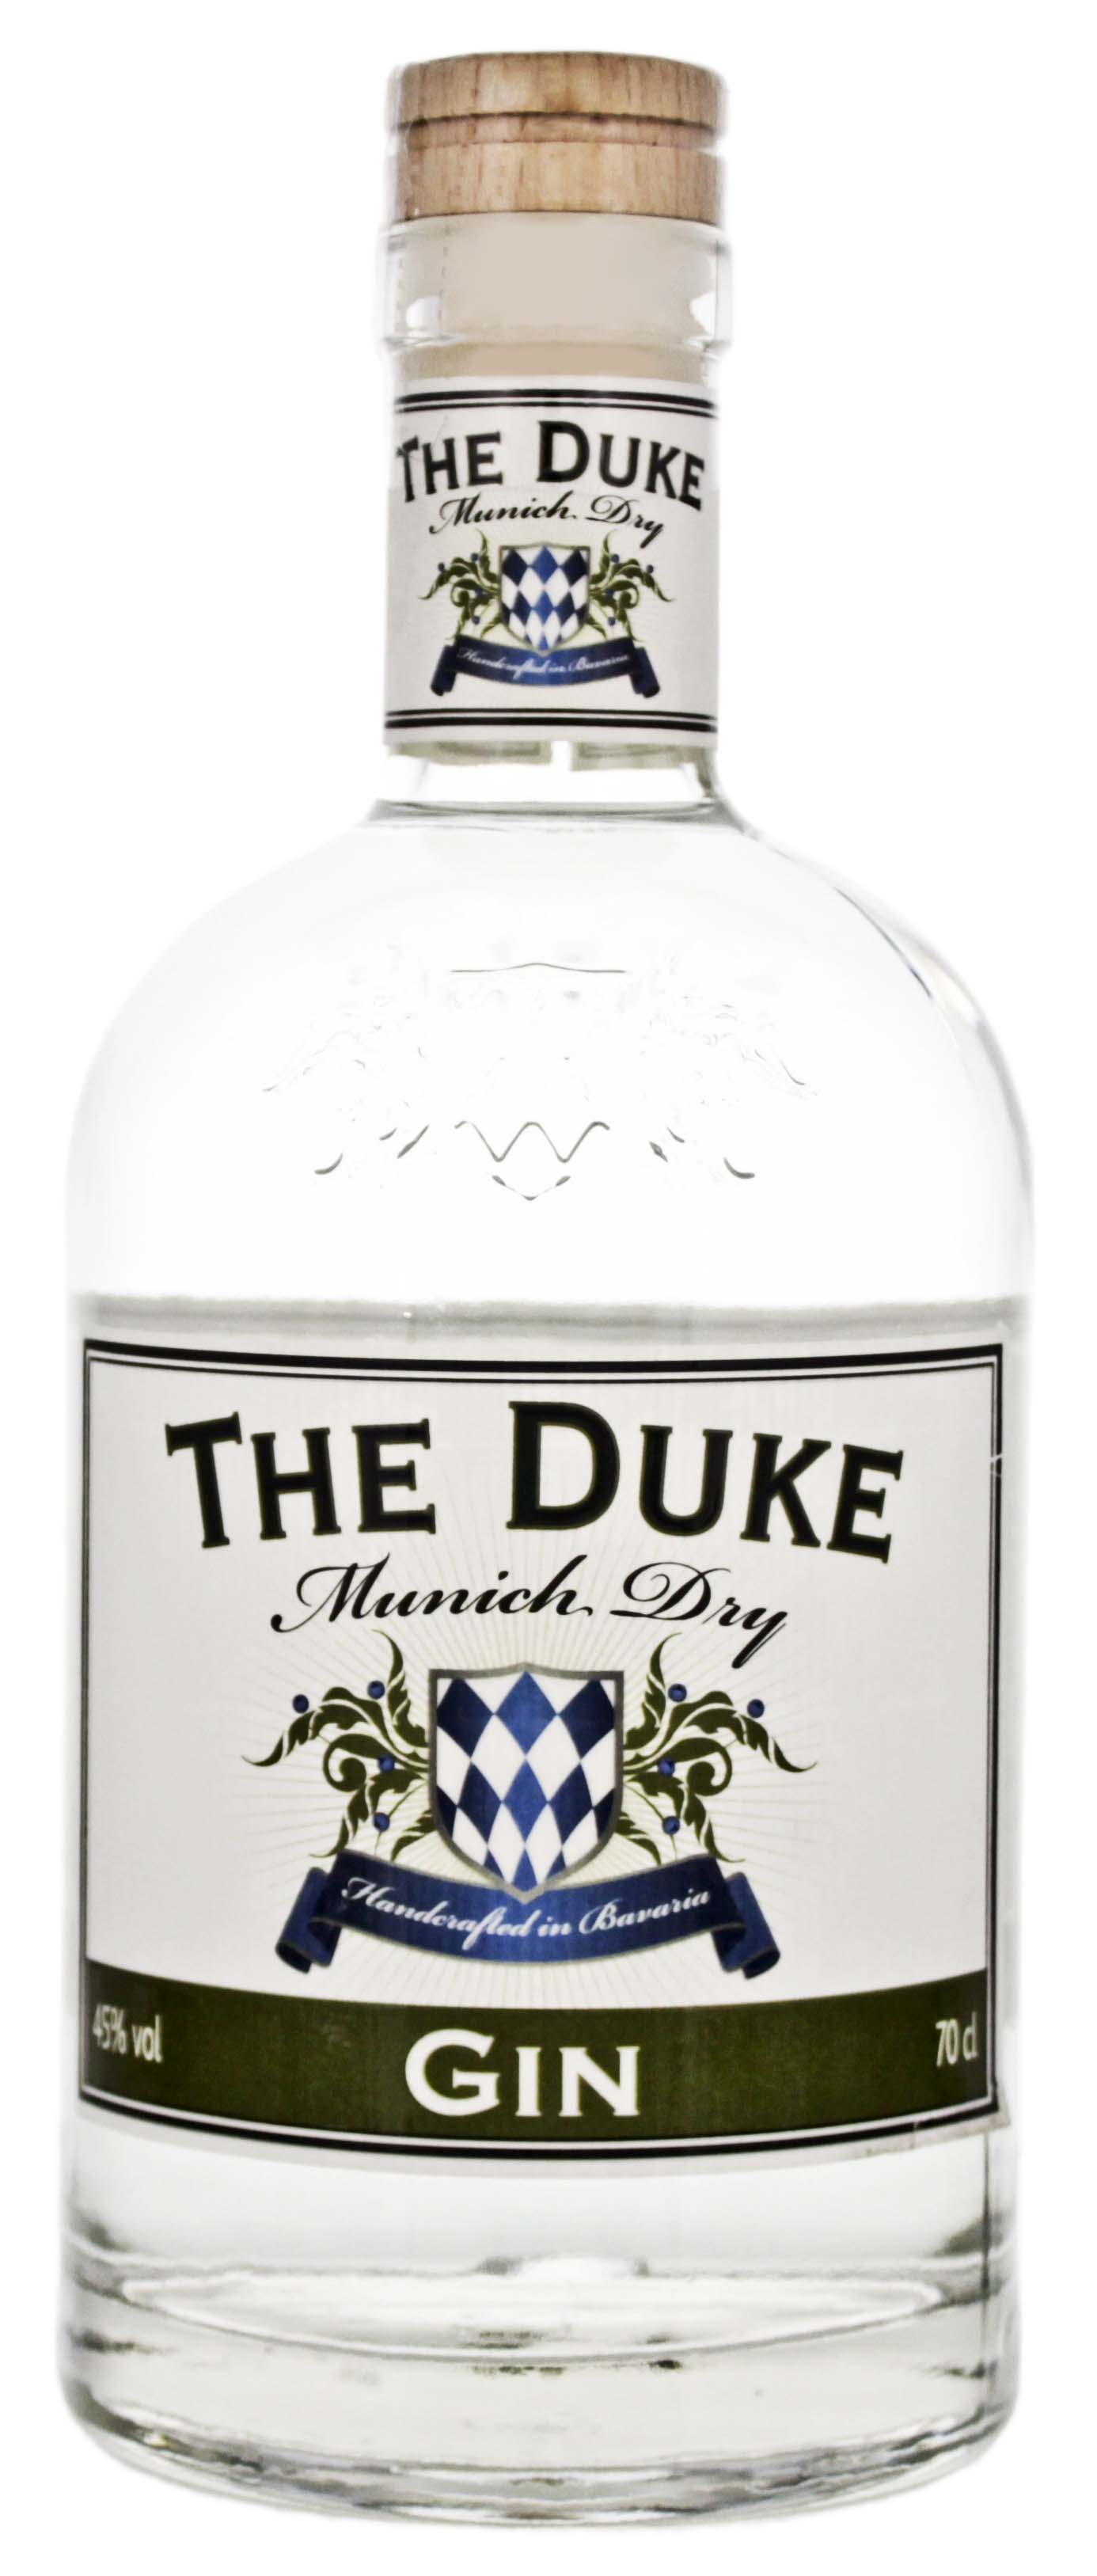 The Duke Gin Munich Dry jetzt kaufen! Gin Online Shop & Spirituosen